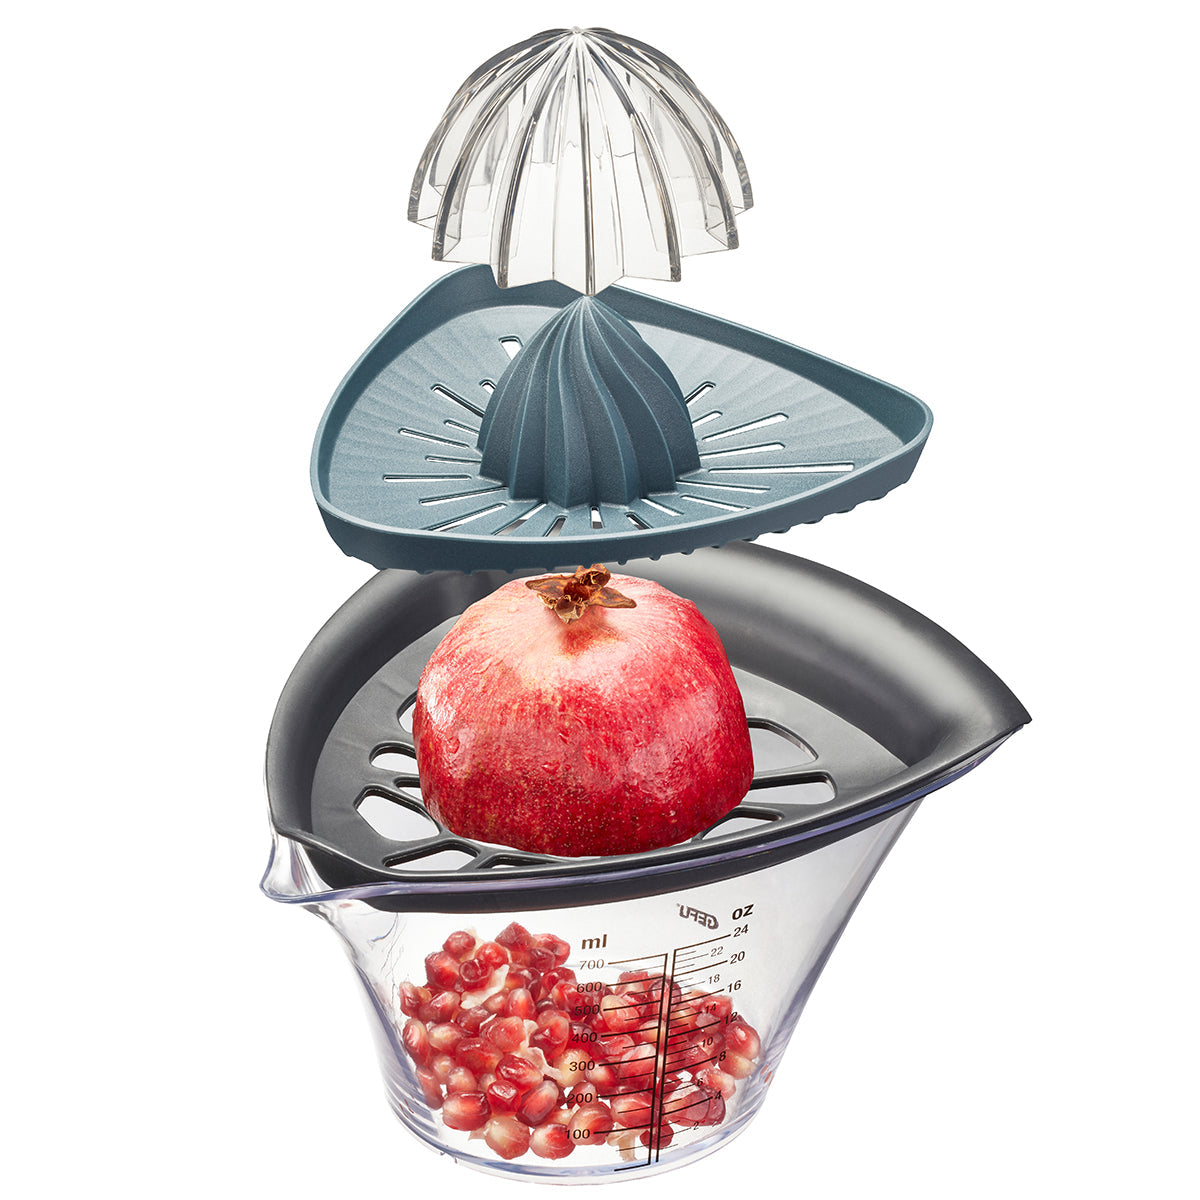 GEFU Pomegranate Seeder and Juicer Fruti